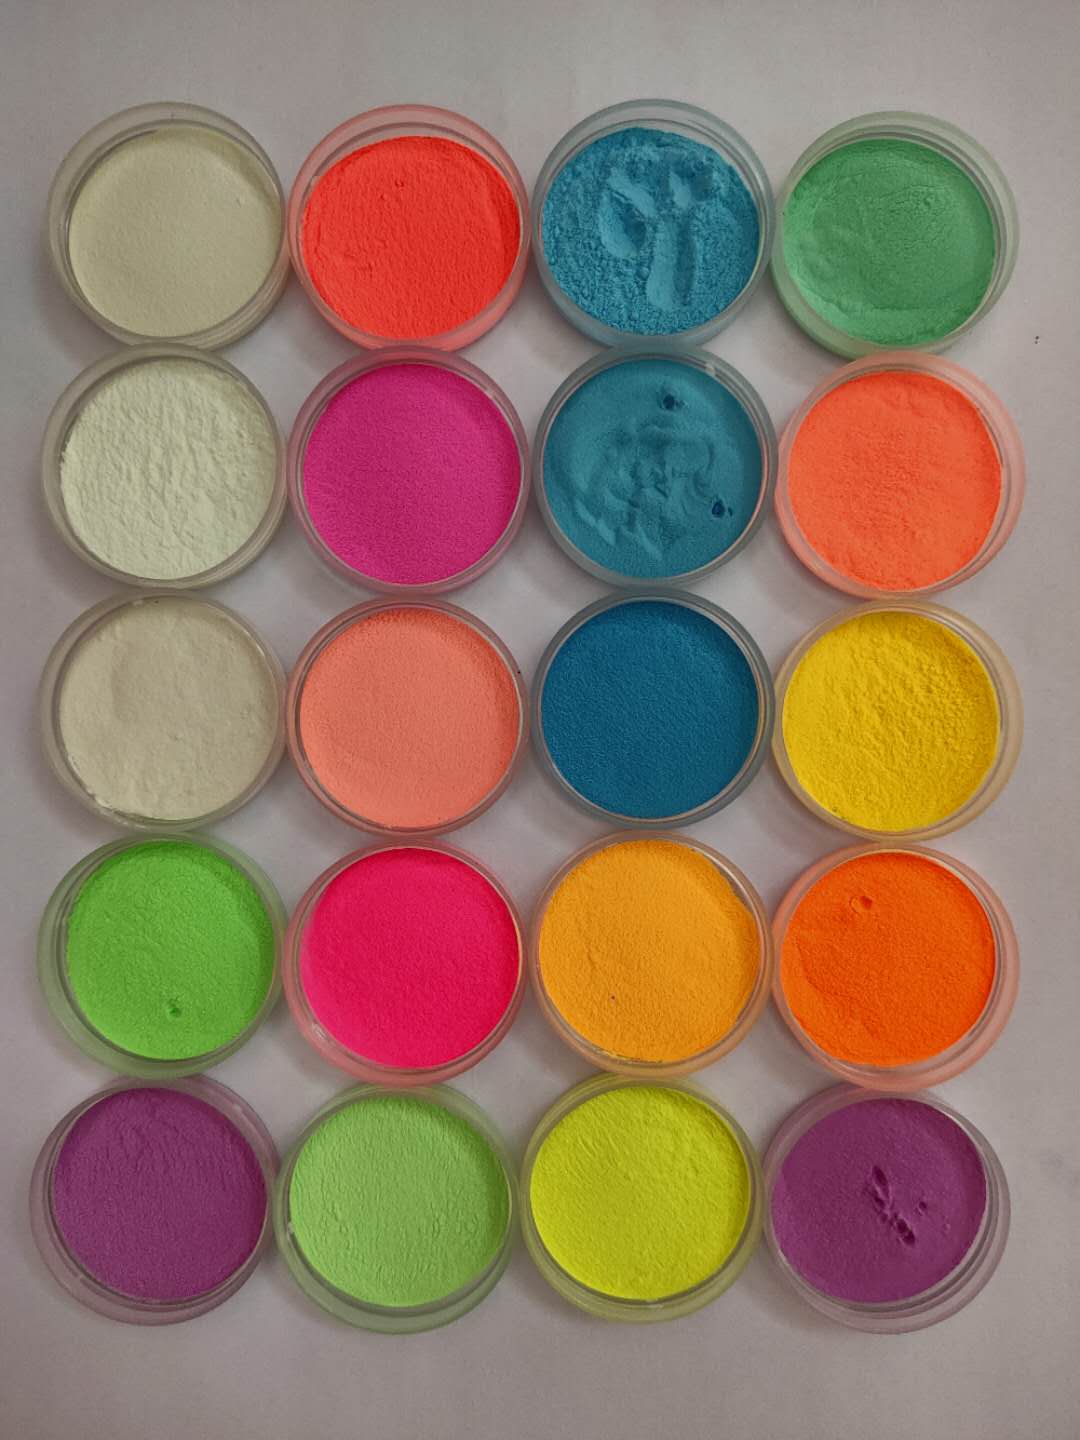 彩虹玩具夜光粉 彩虹铅笔用荧光粉 彩虹夜光粉厂家价格